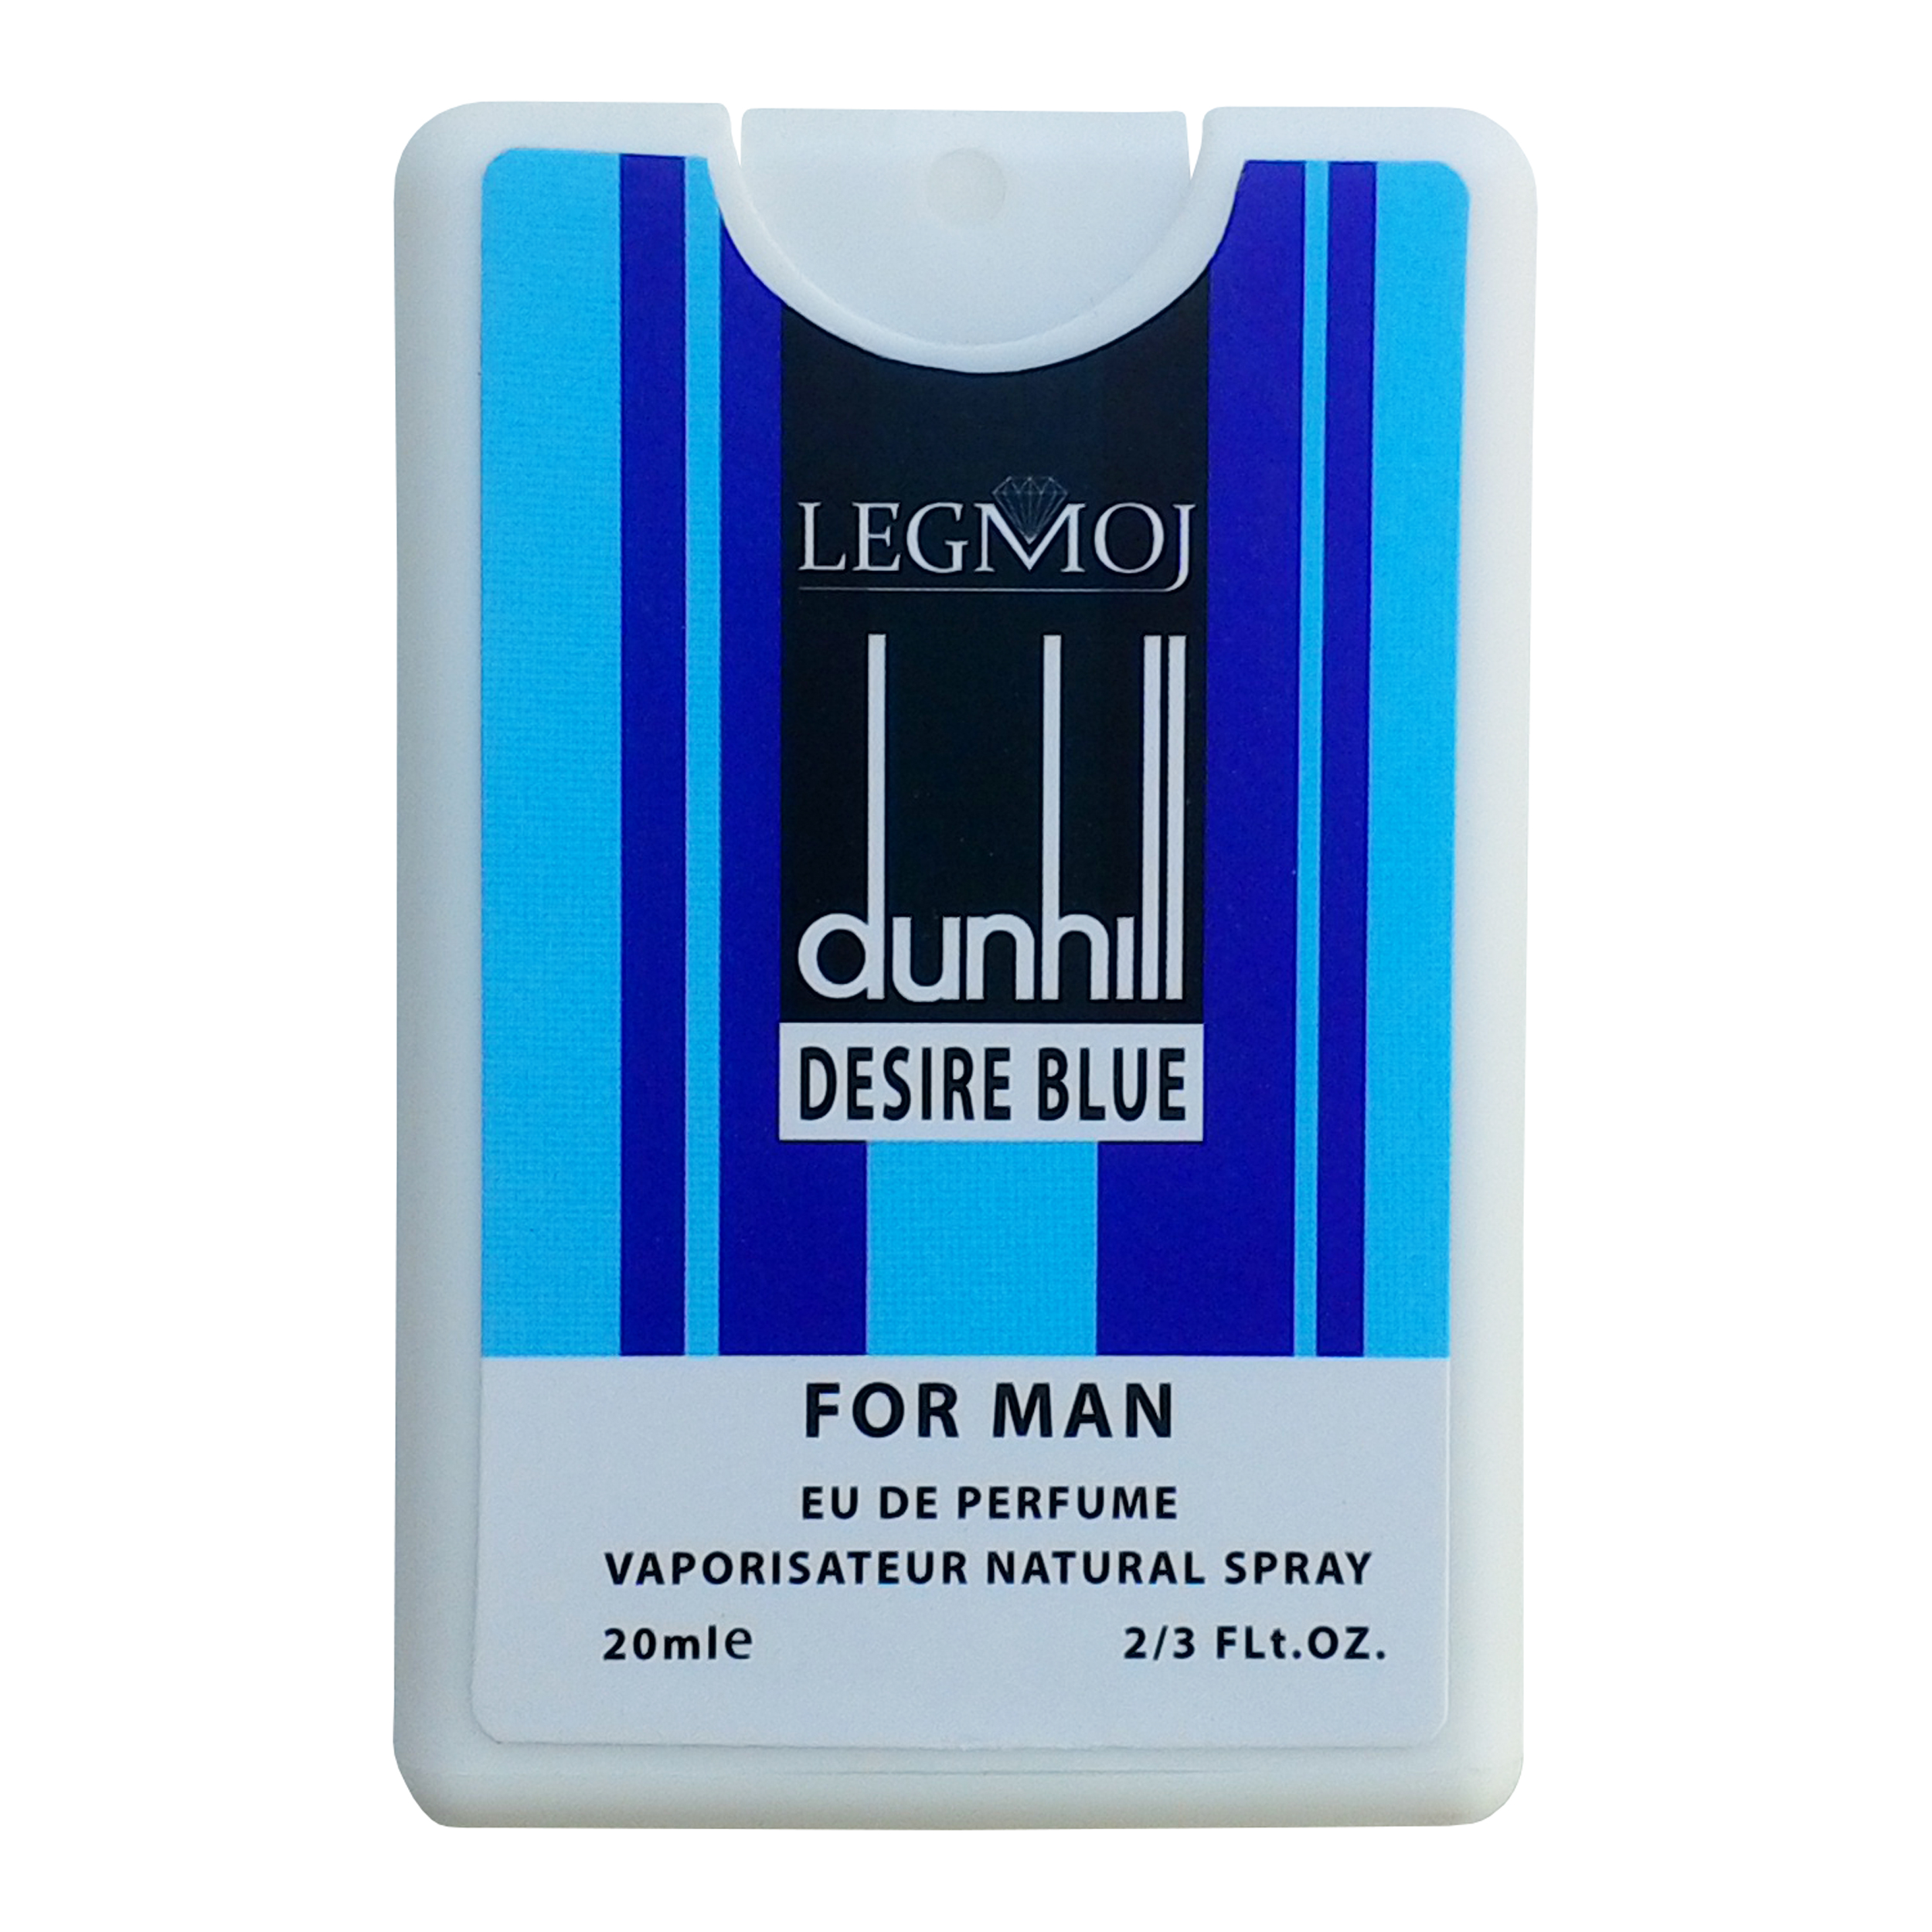 نقد و بررسی عطر جیبی مردانه لغموژ مدل Dunhill Desire Blue حجم 20 میلی لیتر توسط خریداران